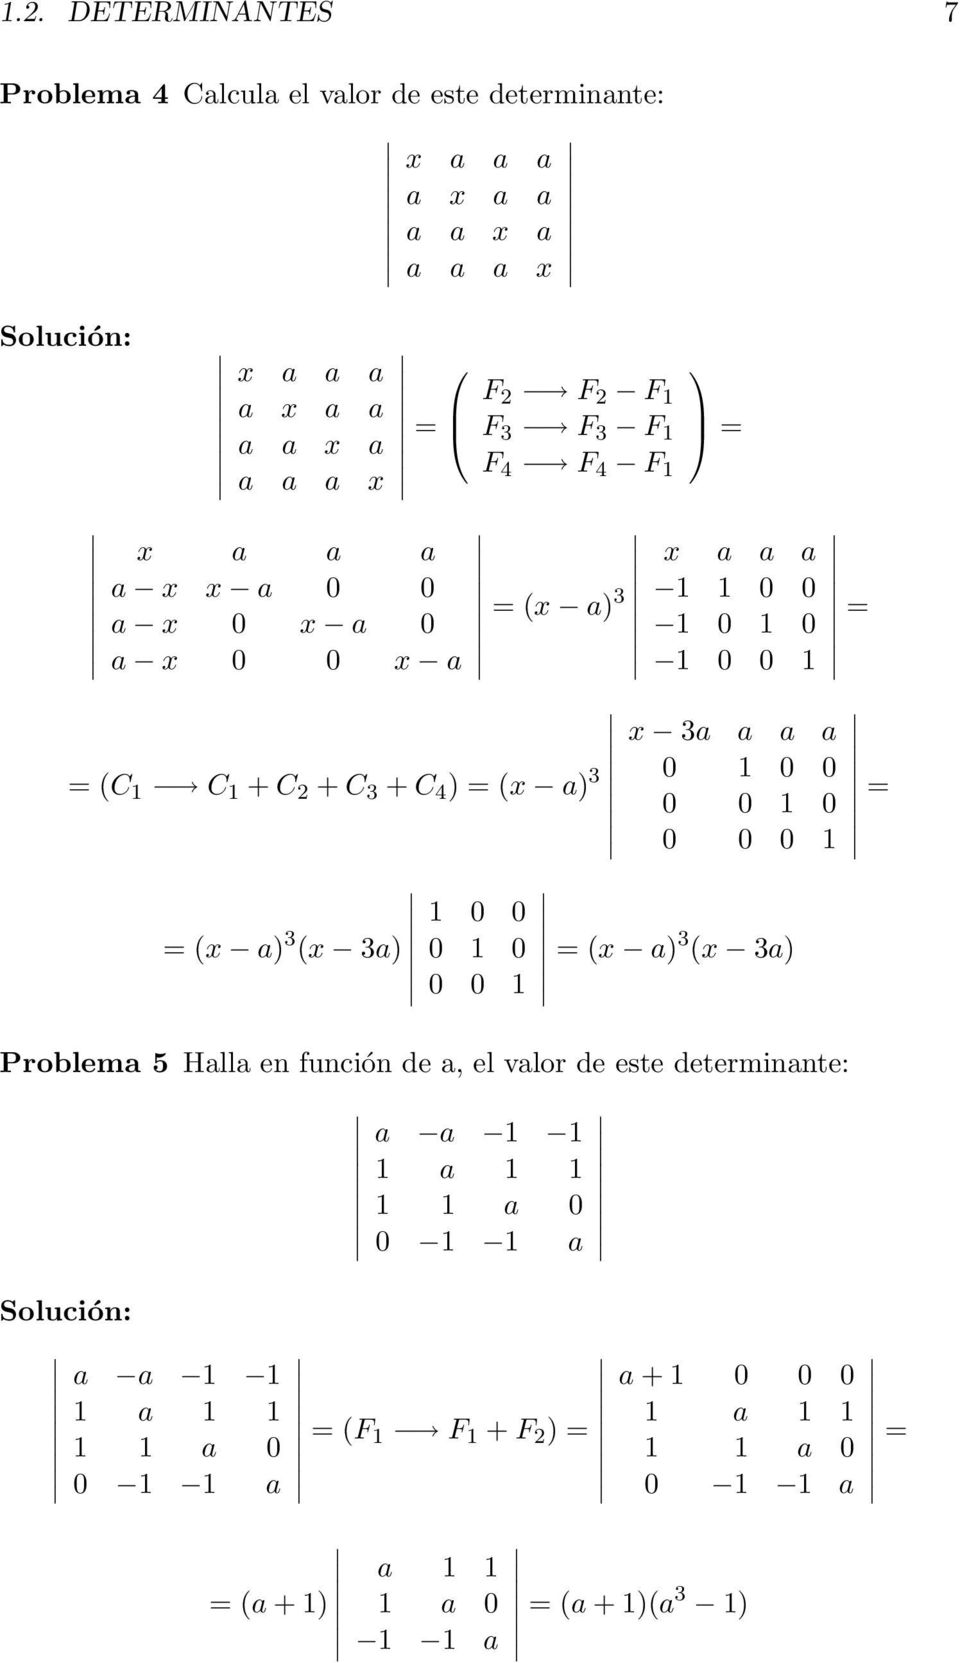 1 0 0 1 0 1 0 1 0 0 1 x 3a a a a 0 1 0 0 0 0 1 0 0 0 0 1 = x a) 3 x 3a) Problema 5 Halla en función de a, el valor de este determinante: a a 1 1 1 a 1